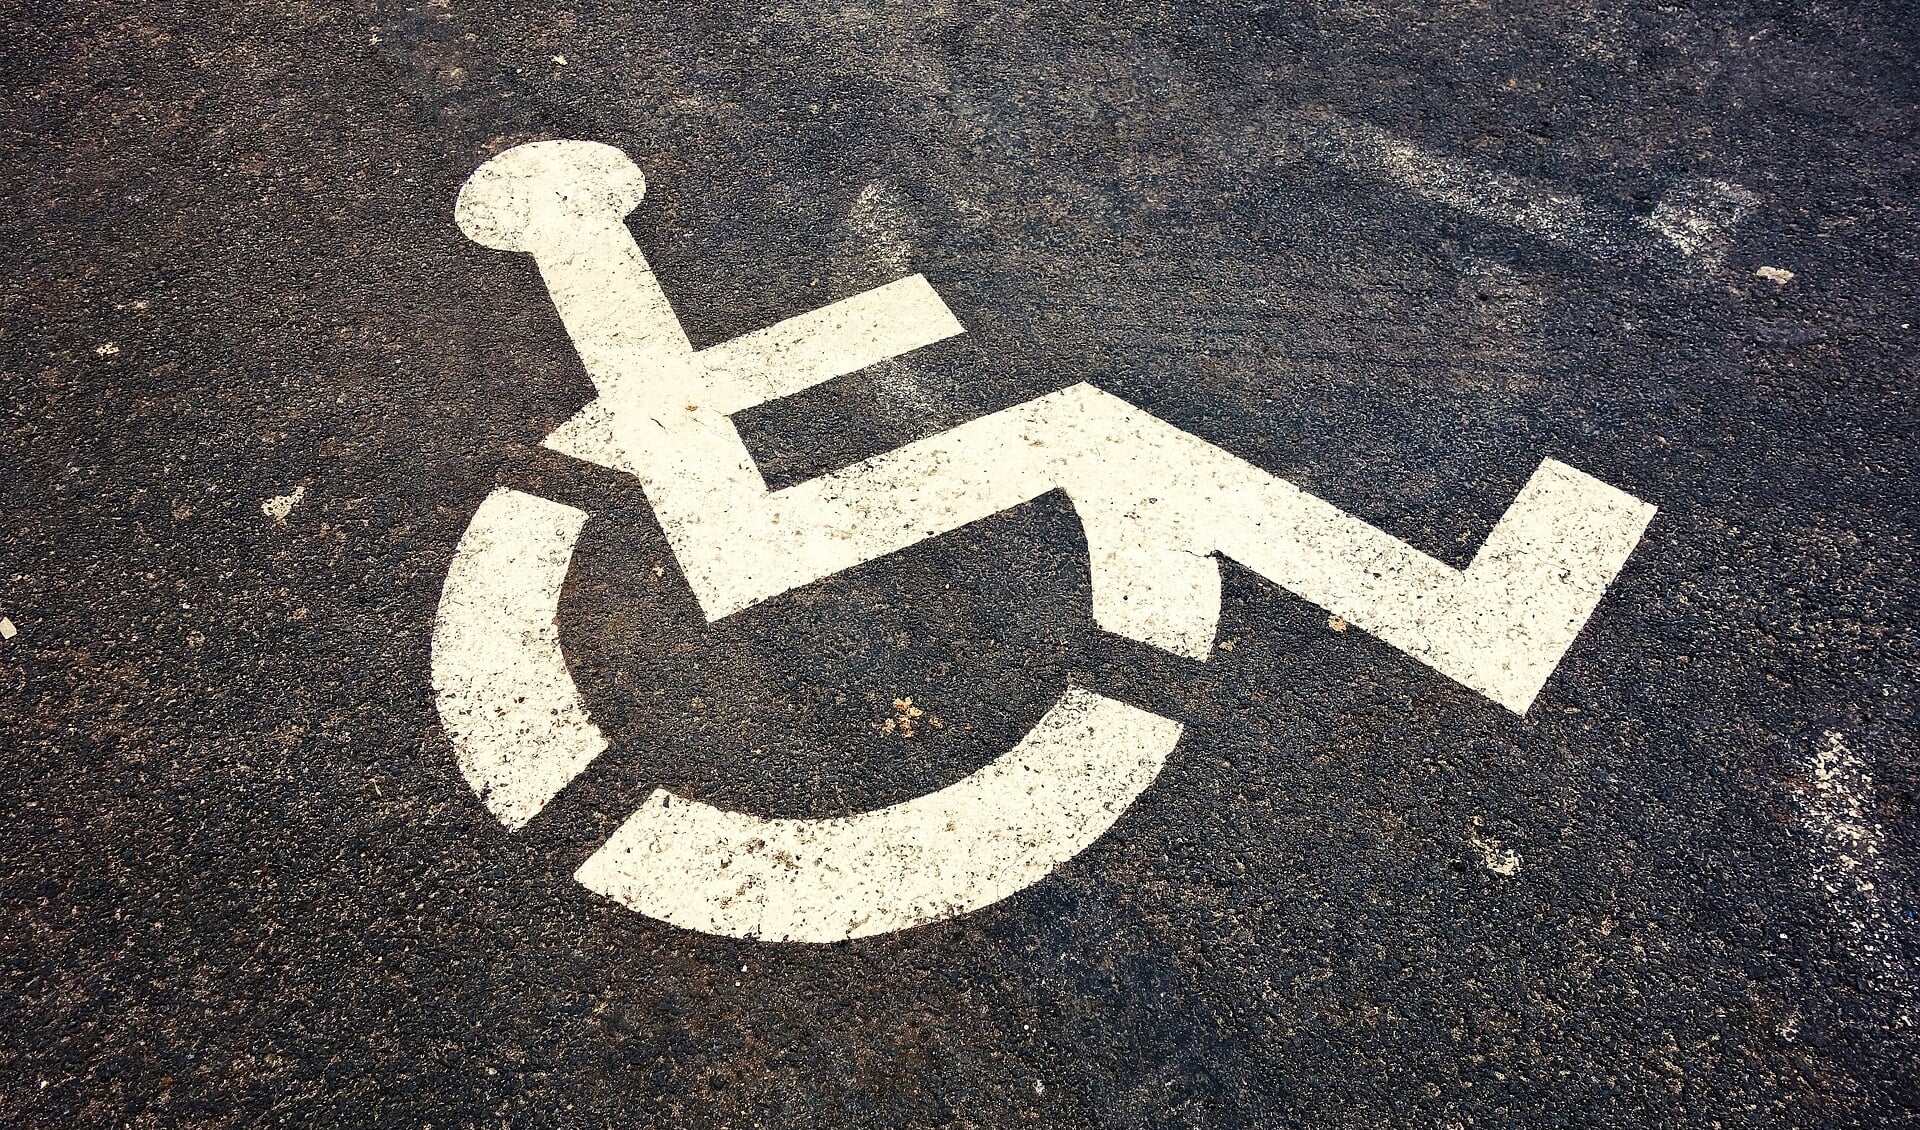 Heb je een gehandicaptenparkeerkaart en kom je binnenkort naar de Bossche binnenstad? Gebruik dan de slimme parkeerapp. 